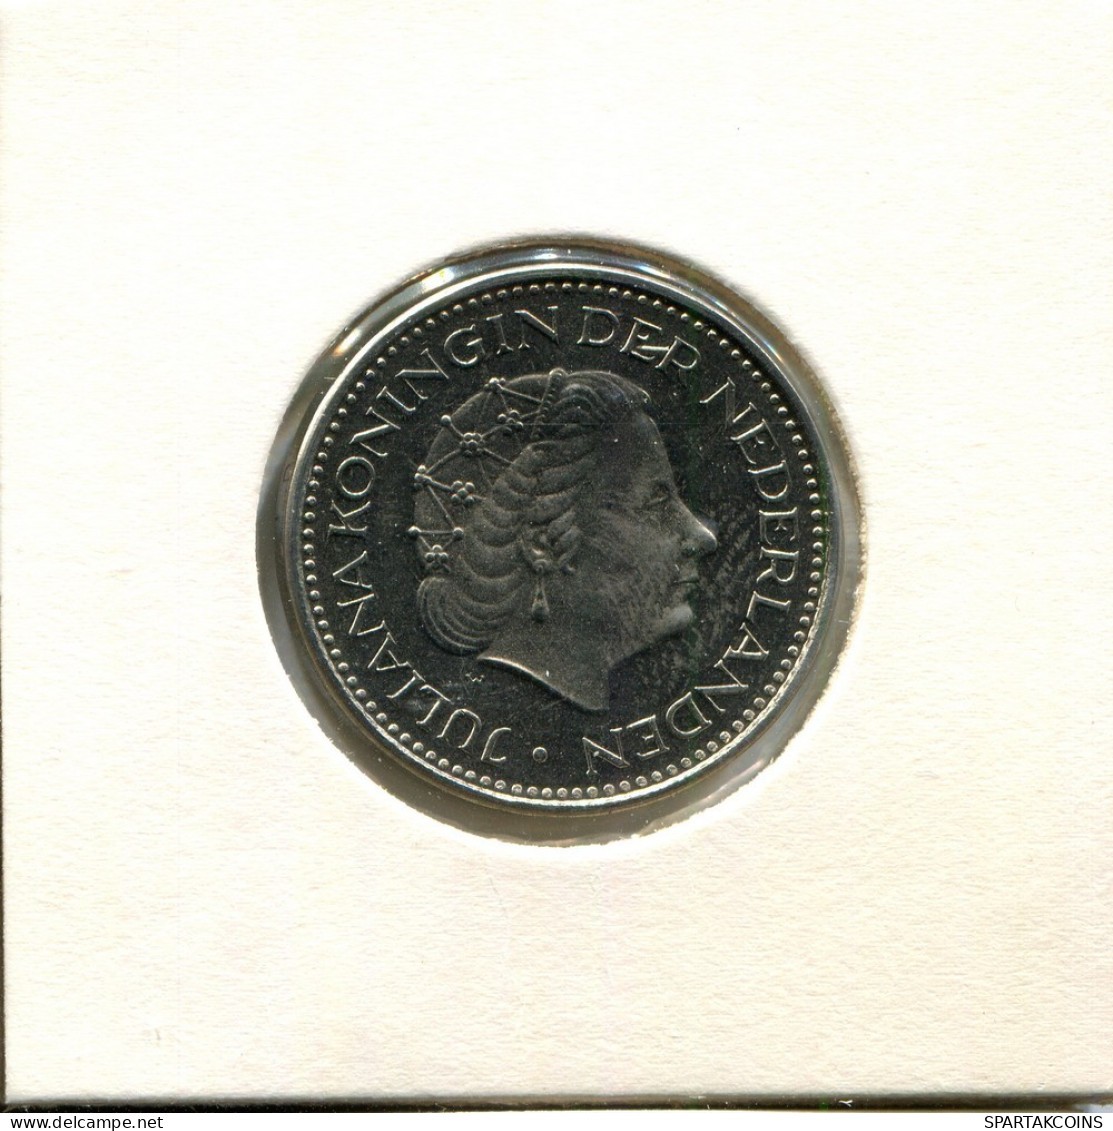 1 GULDEN 1980 NEERLANDÉS NETHERLANDS Moneda #AU514.E.A - 1948-1980 : Juliana